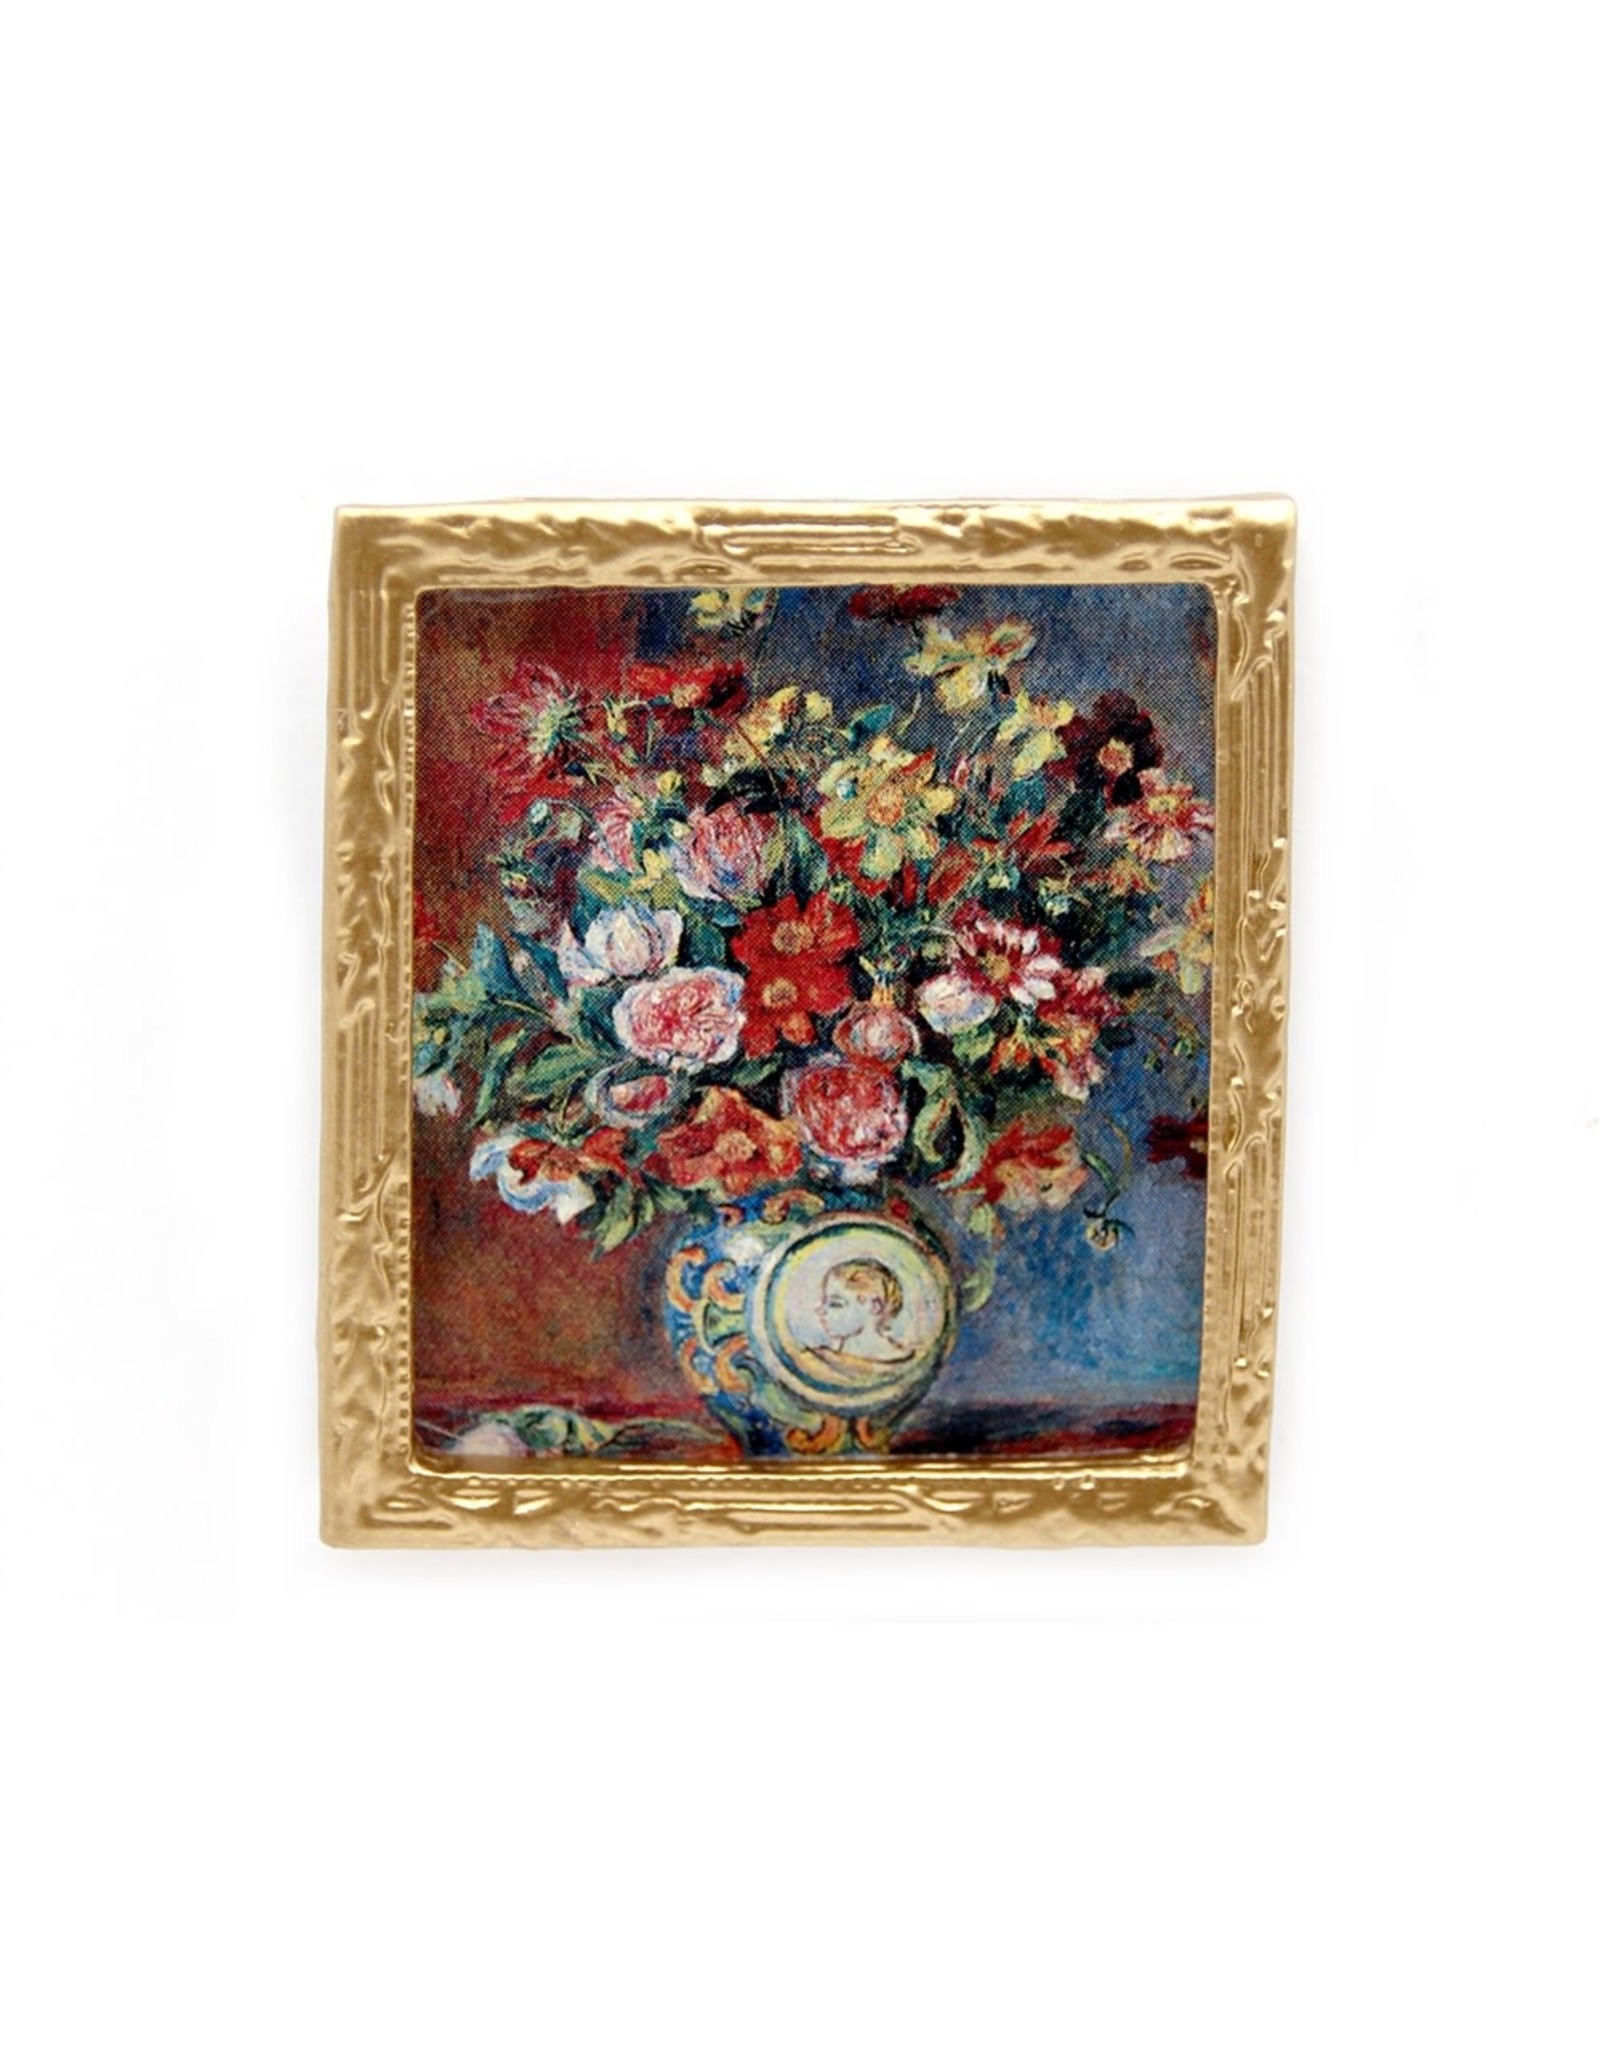 The Wonham Collection Tableau Fleurs, Renoir miniature 1:12